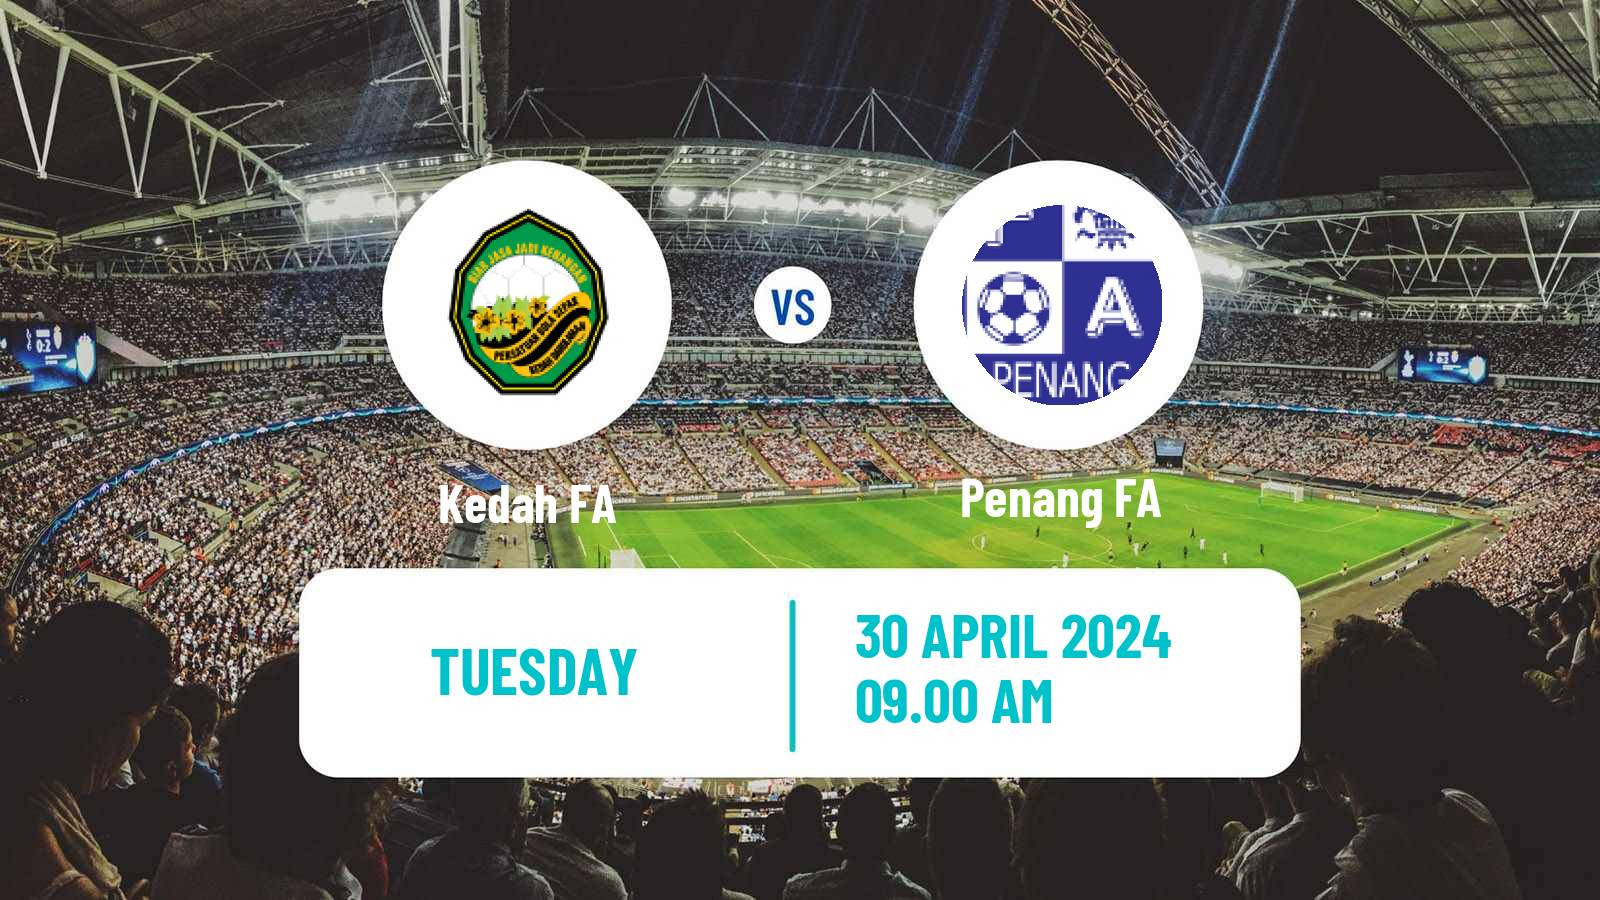 Soccer Club Friendly Kedah FA - Penang